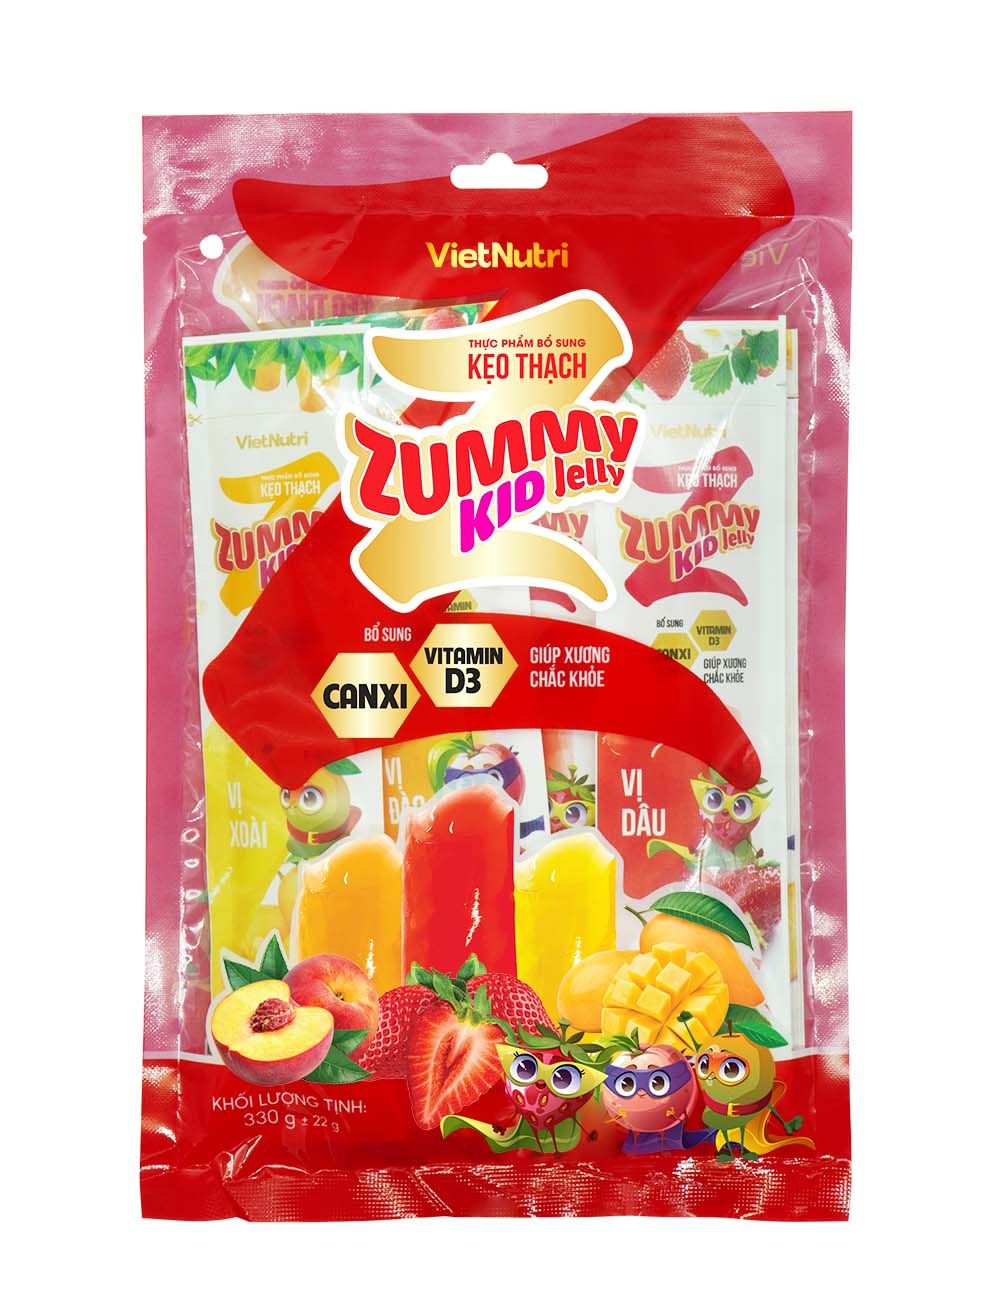  Thực phẩm bổ sung Vitamin D3 Canxi Kẹo thạch Zummy Kid Jelly - Thùng 24 Túi 